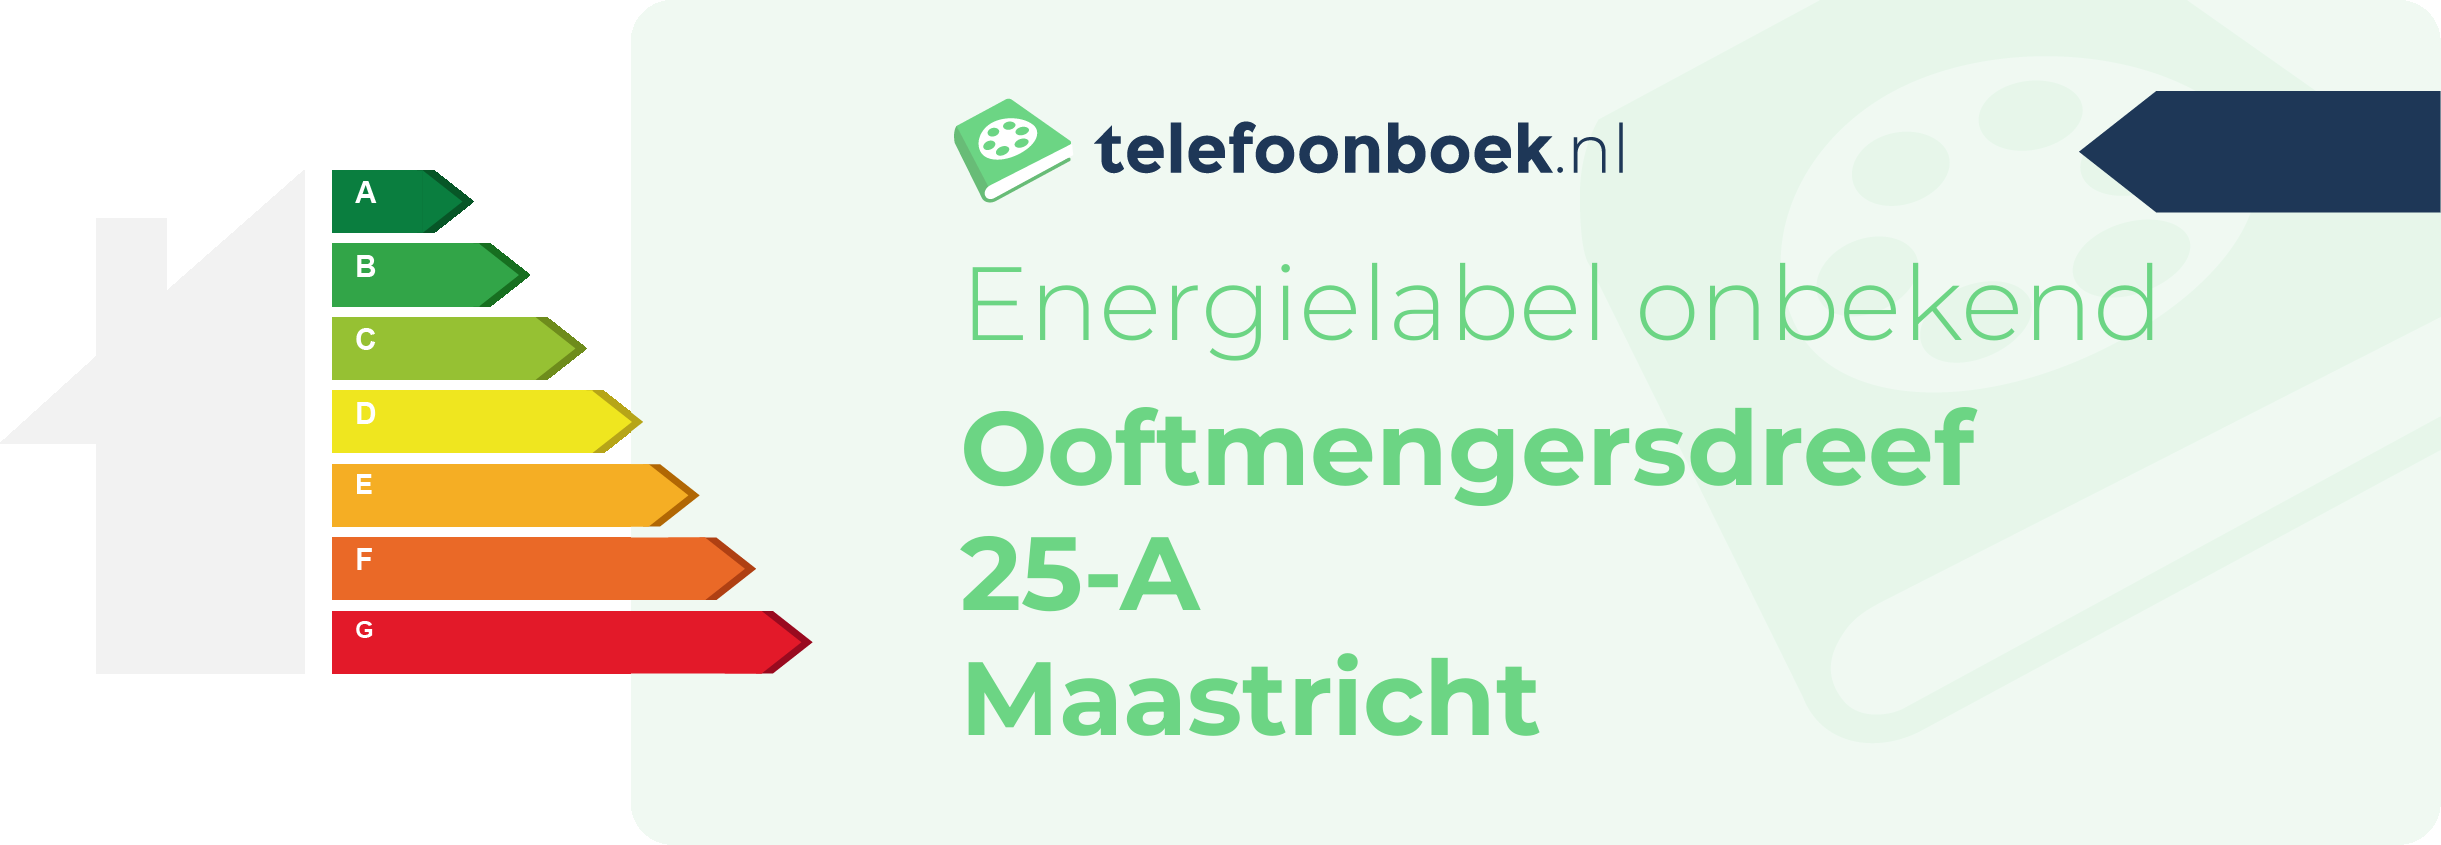 Energielabel Ooftmengersdreef 25-A Maastricht